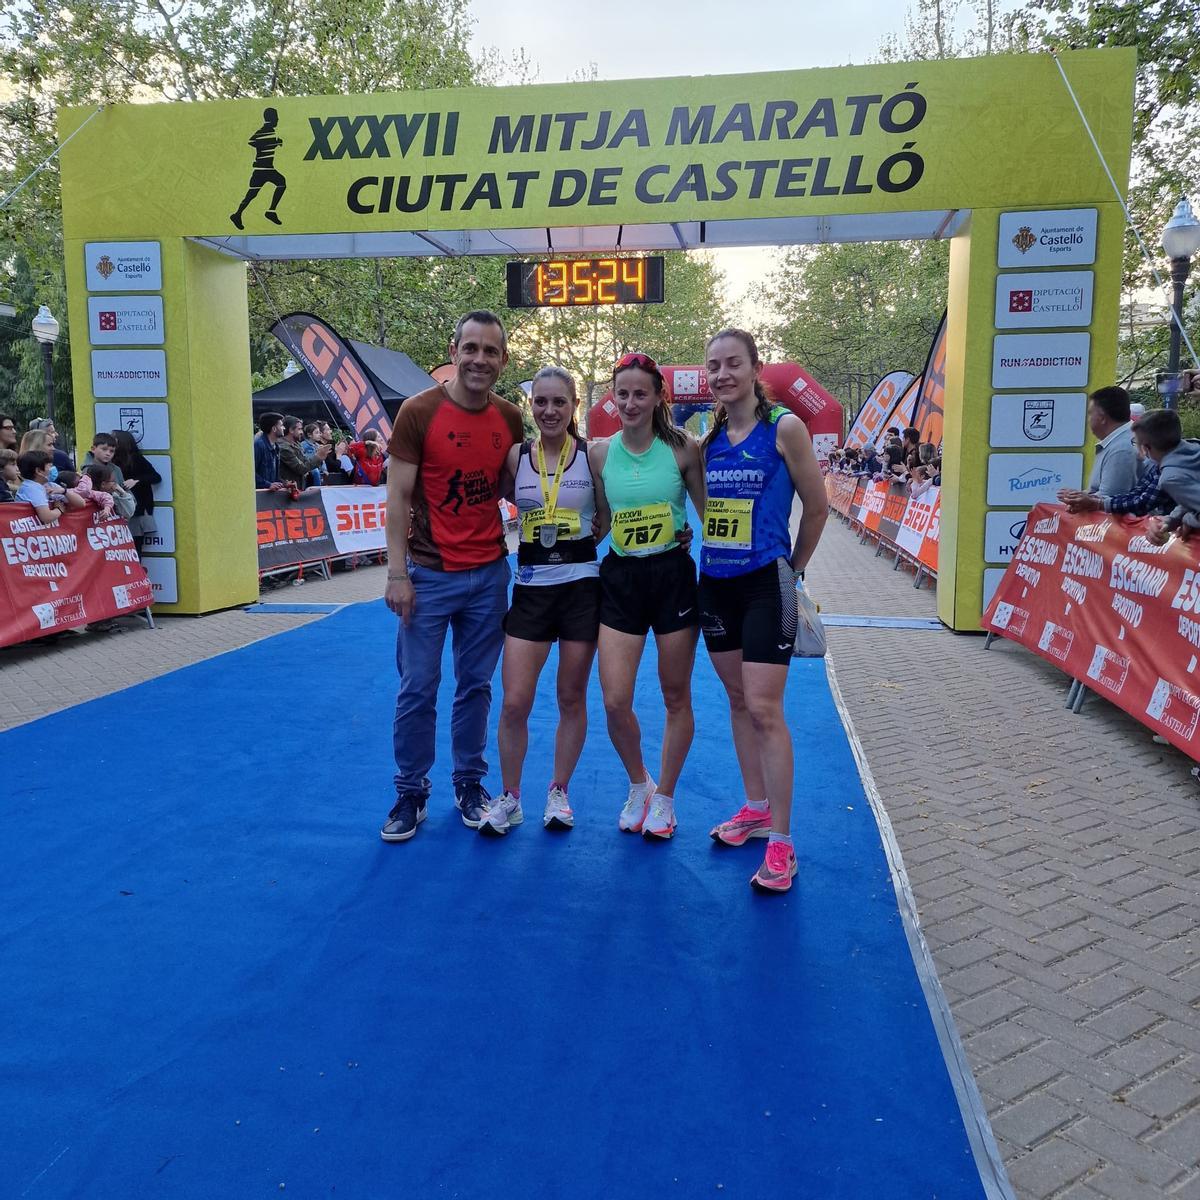 Las tres ganadoras de la categoría femenina de la XXXVII Mitja Marató de Castelló.